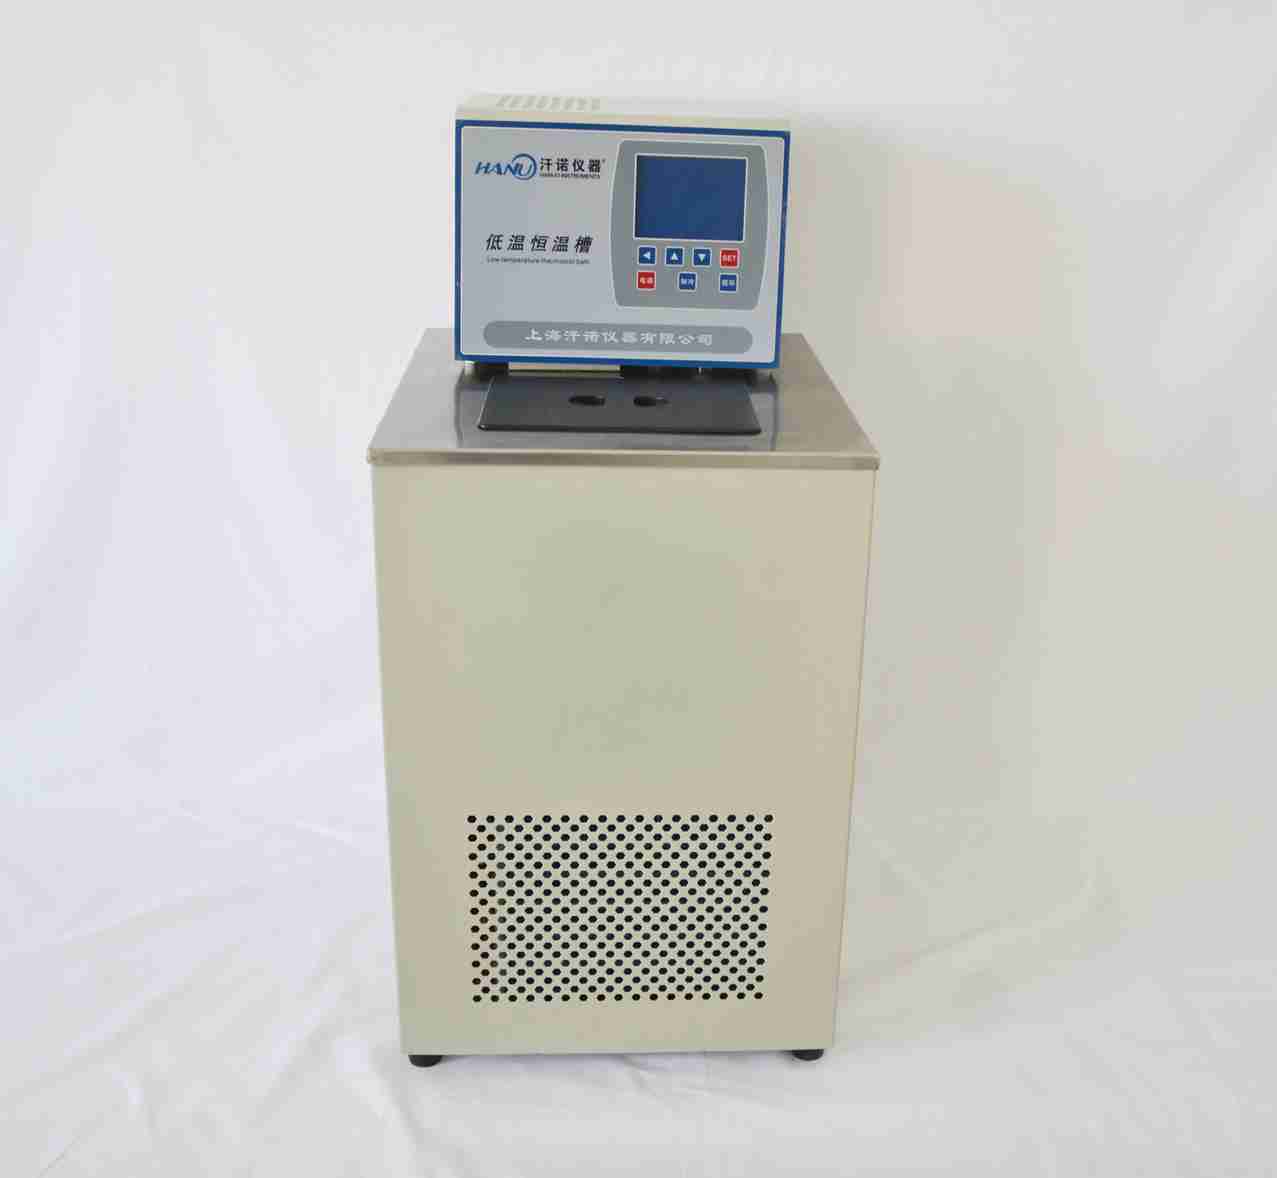 低温恒温槽/恒温循环水浴/卧式低温恒温槽上海达洛科学仪器有限公司